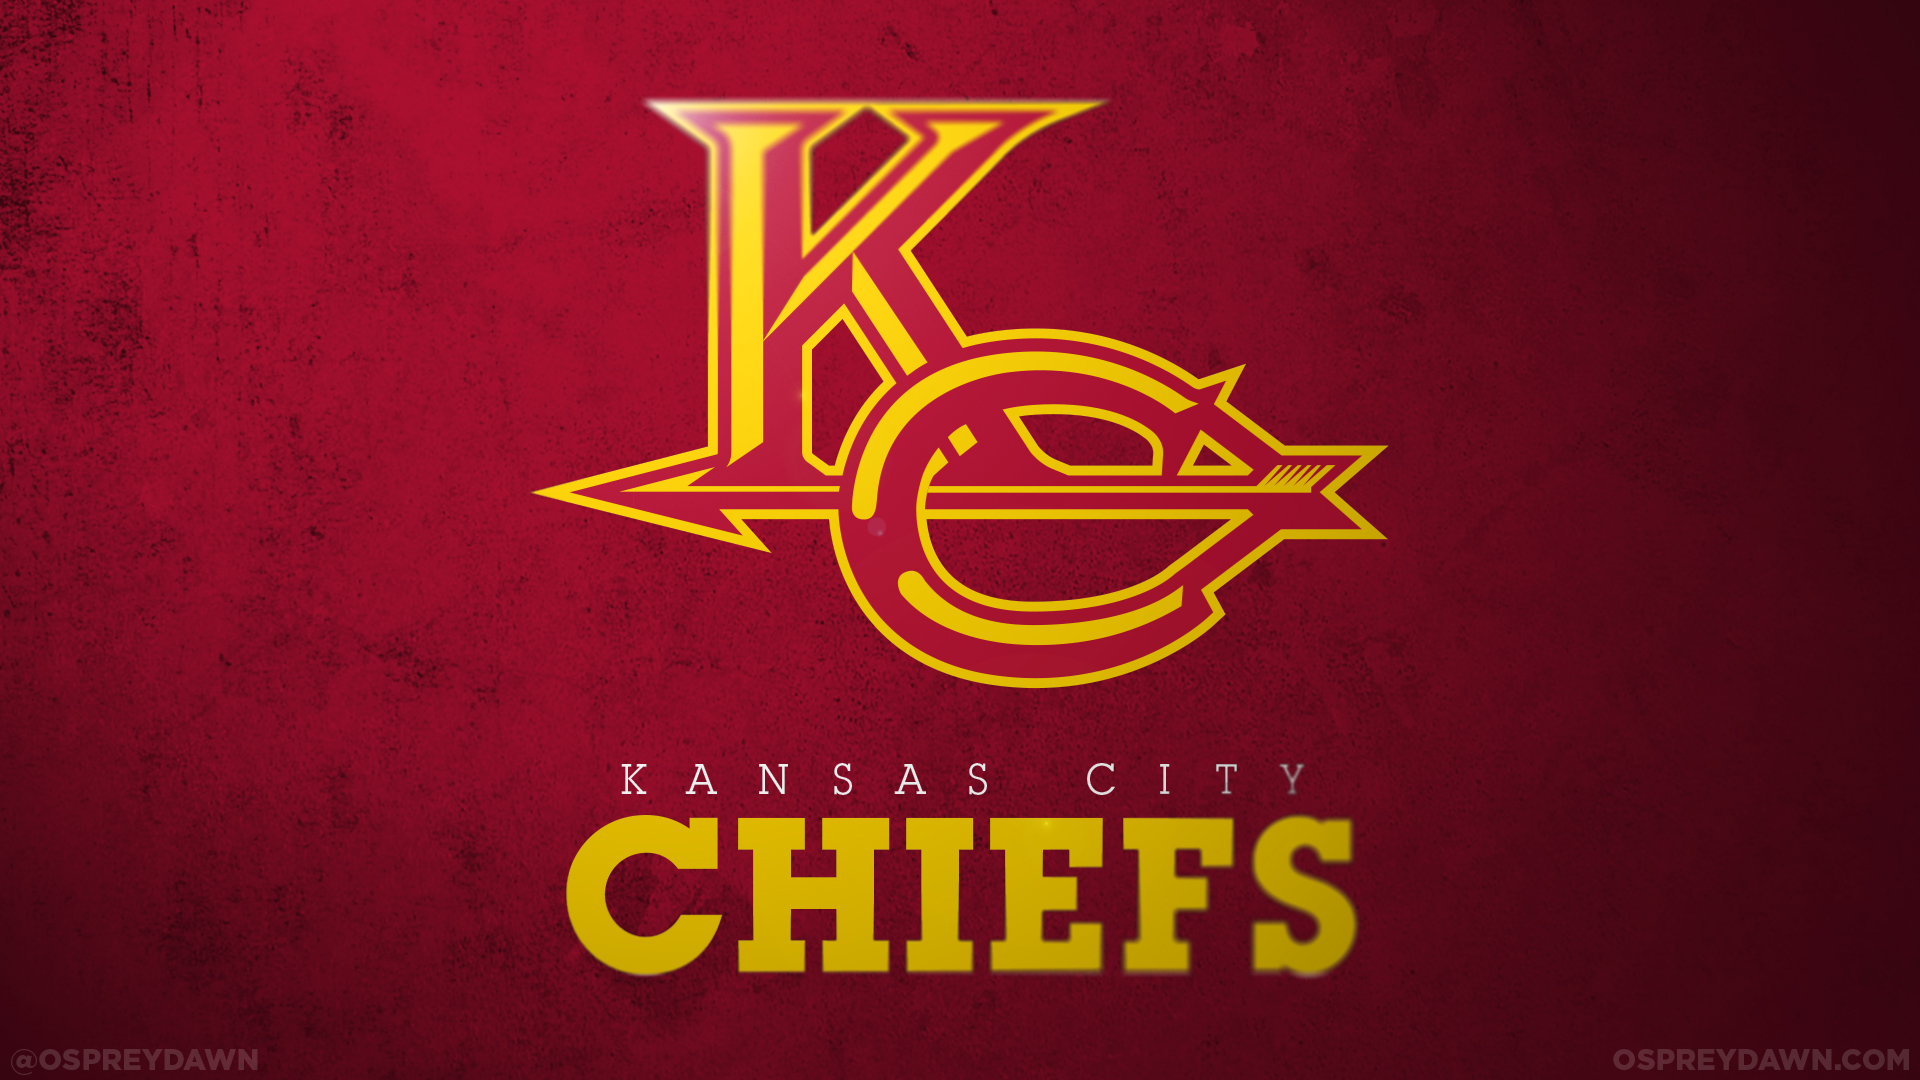 Kansas City Chiefs Football Team Logo Wallpapers HD